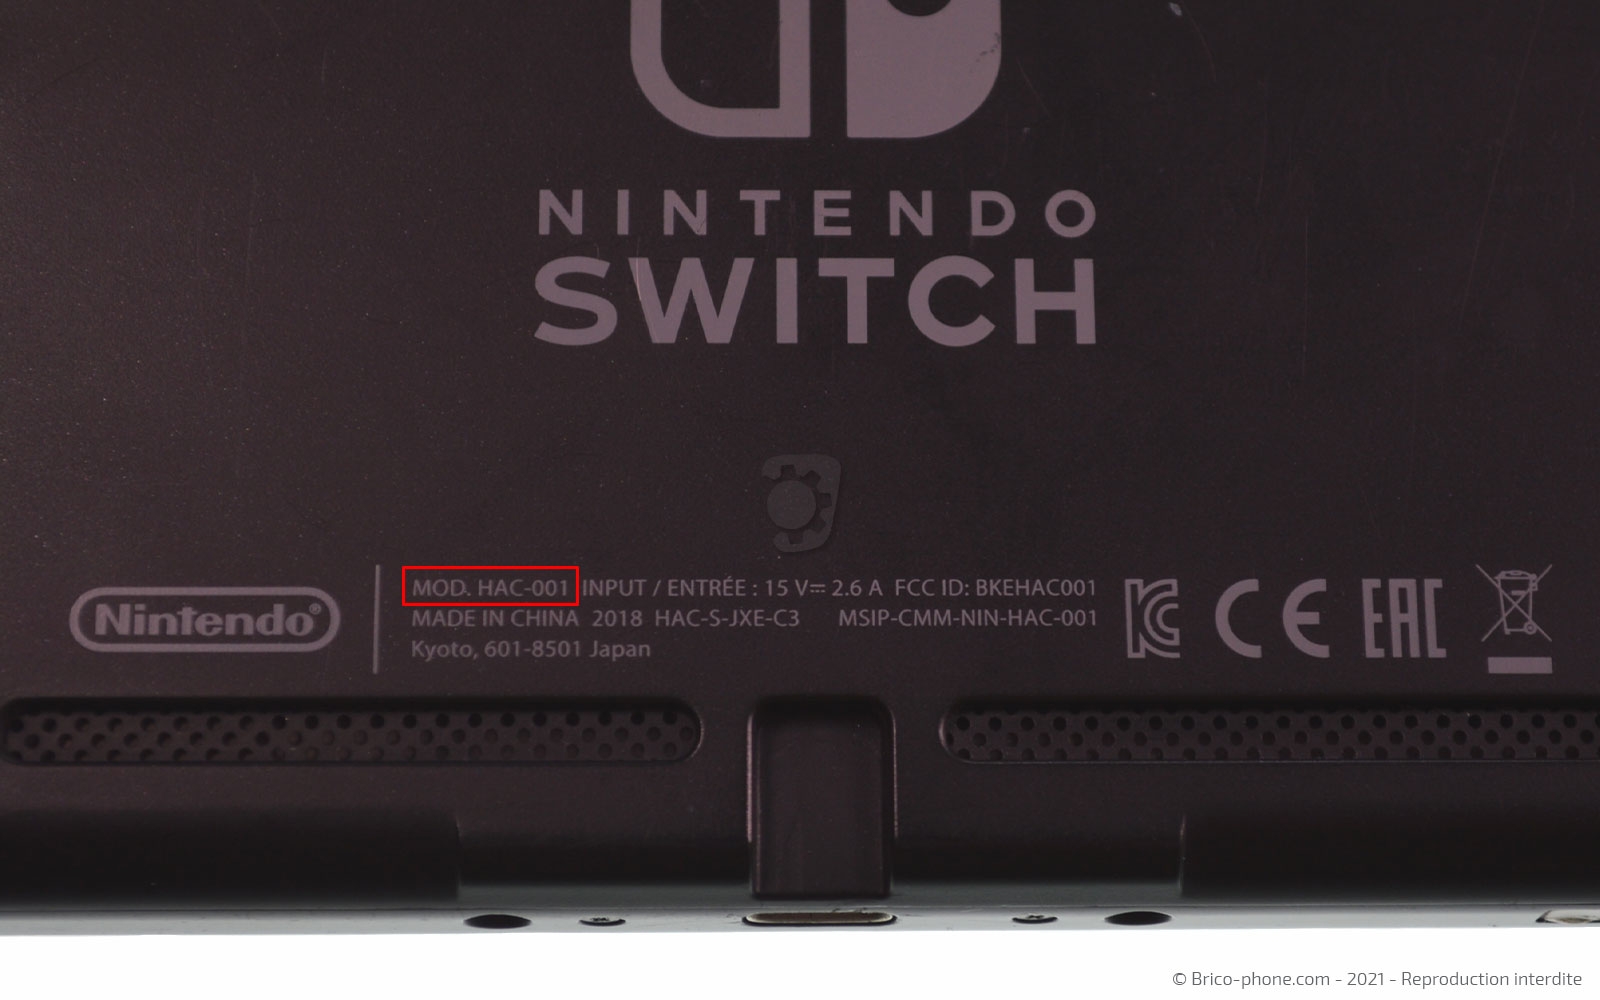 Port Type C pour Console de jeux Nintendo Switch Port USB à souder prise  connecteur de charge